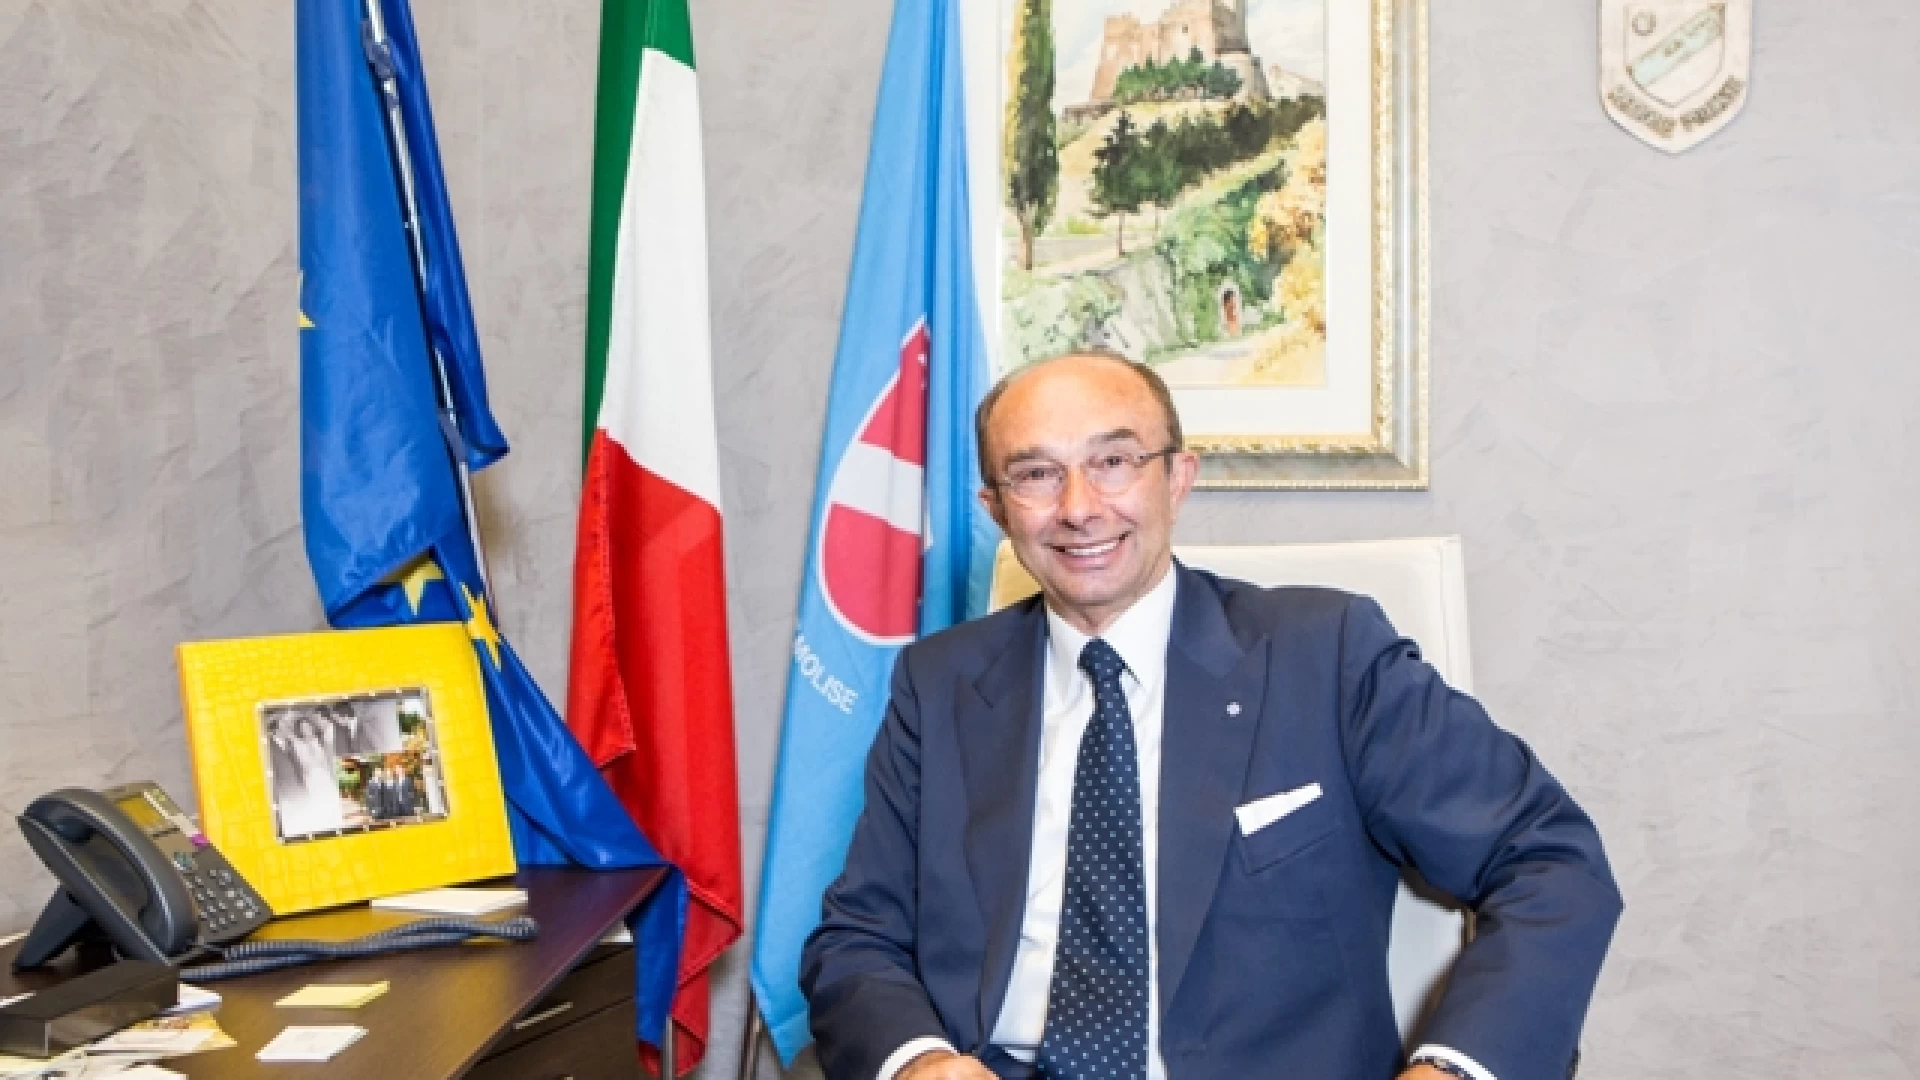 L’Assessore regionale Vincenzo Cotugno risponde ai Cinque Stelle sul piano strategico. “Nessuna spesa folle”.